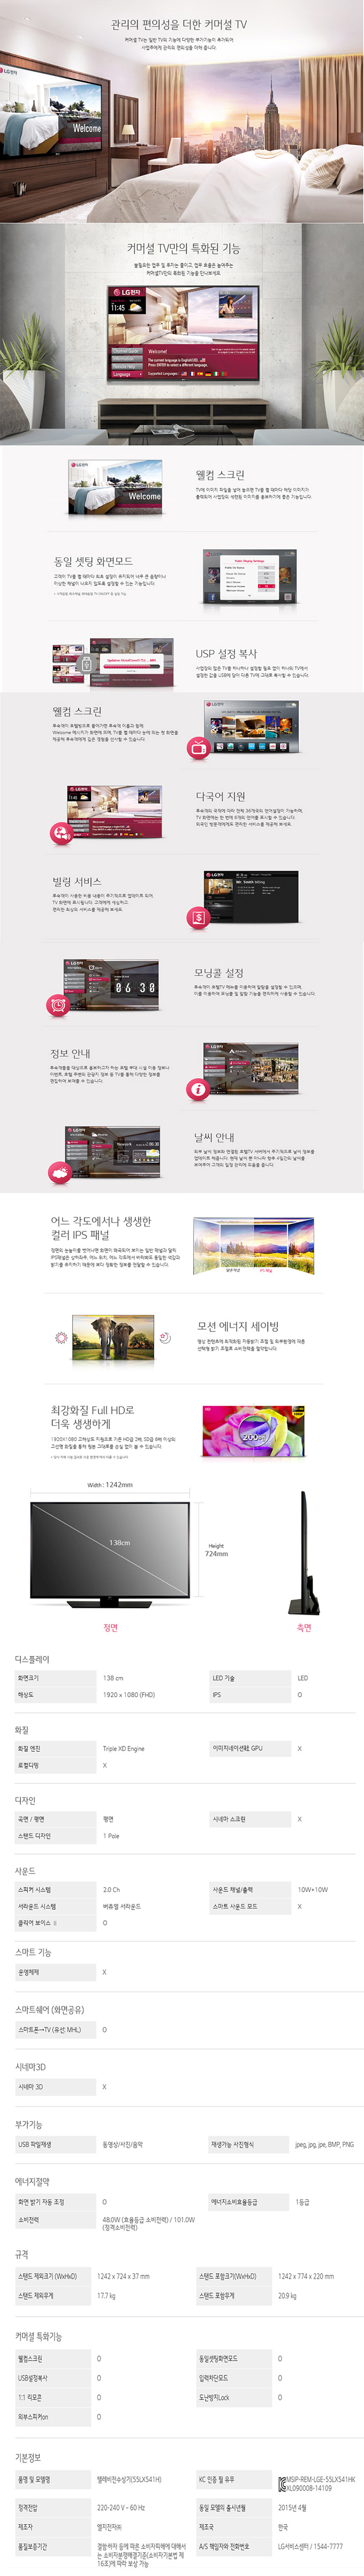 성동케이블 - LG 55인치 UHD TV (55LV540H) 상세보기